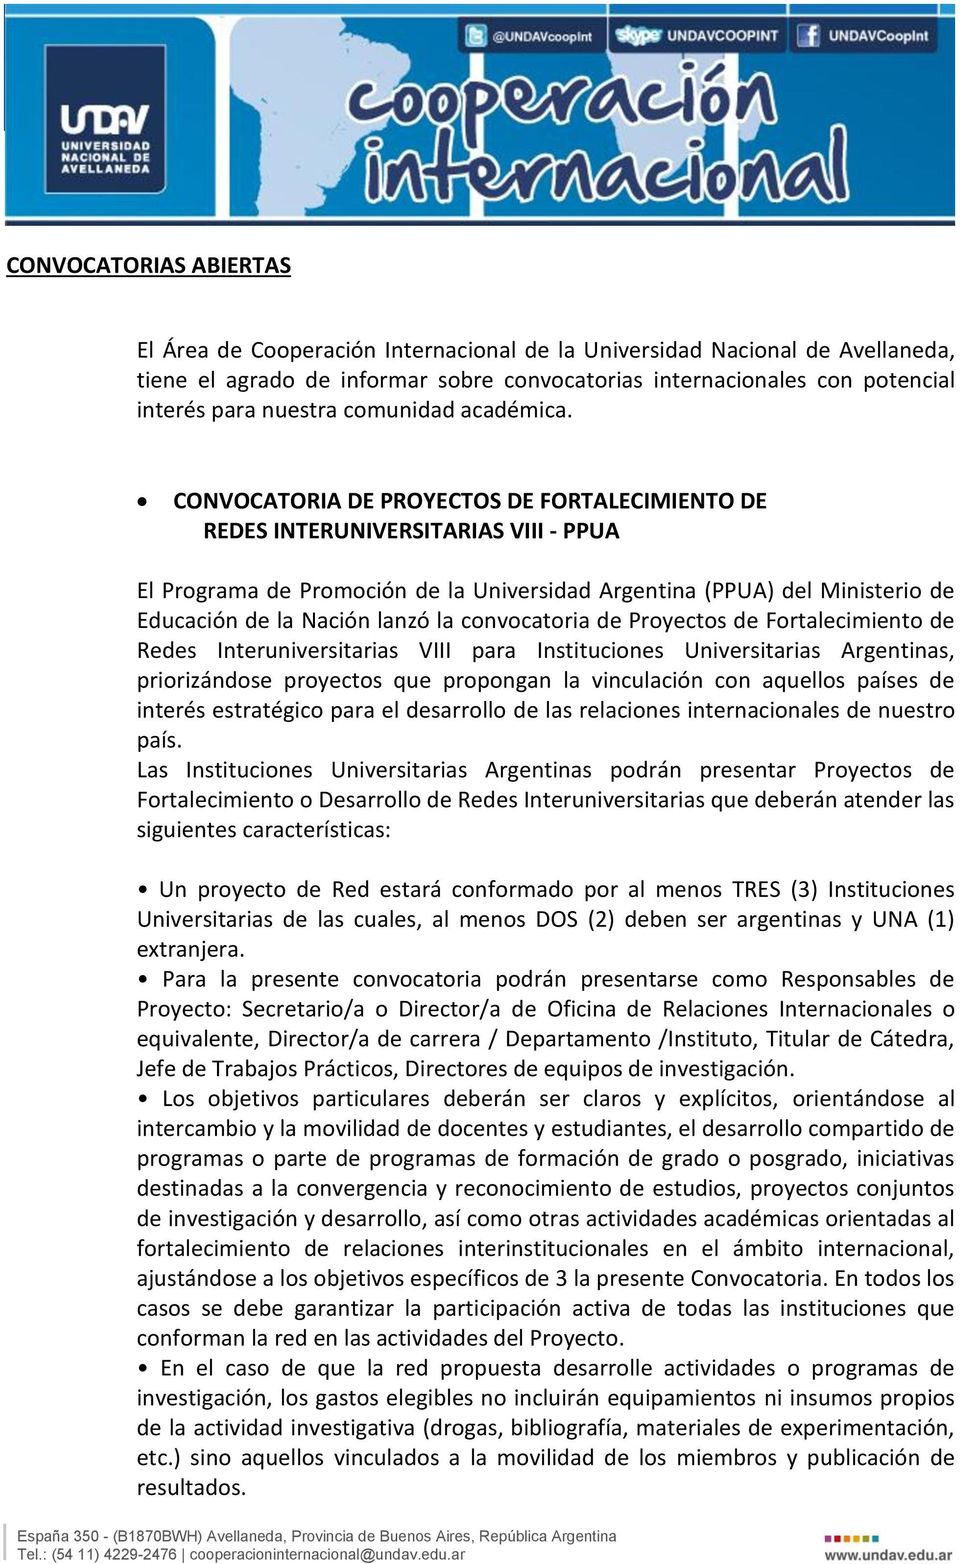 CONVOCATORIA DE PROYECTOS DE FORTALECIMIENTO DE REDES INTERUNIVERSITARIAS VIII - PPUA El Programa de Promoción de la Universidad Argentina (PPUA) del Ministerio de Educación de la Nación lanzó la